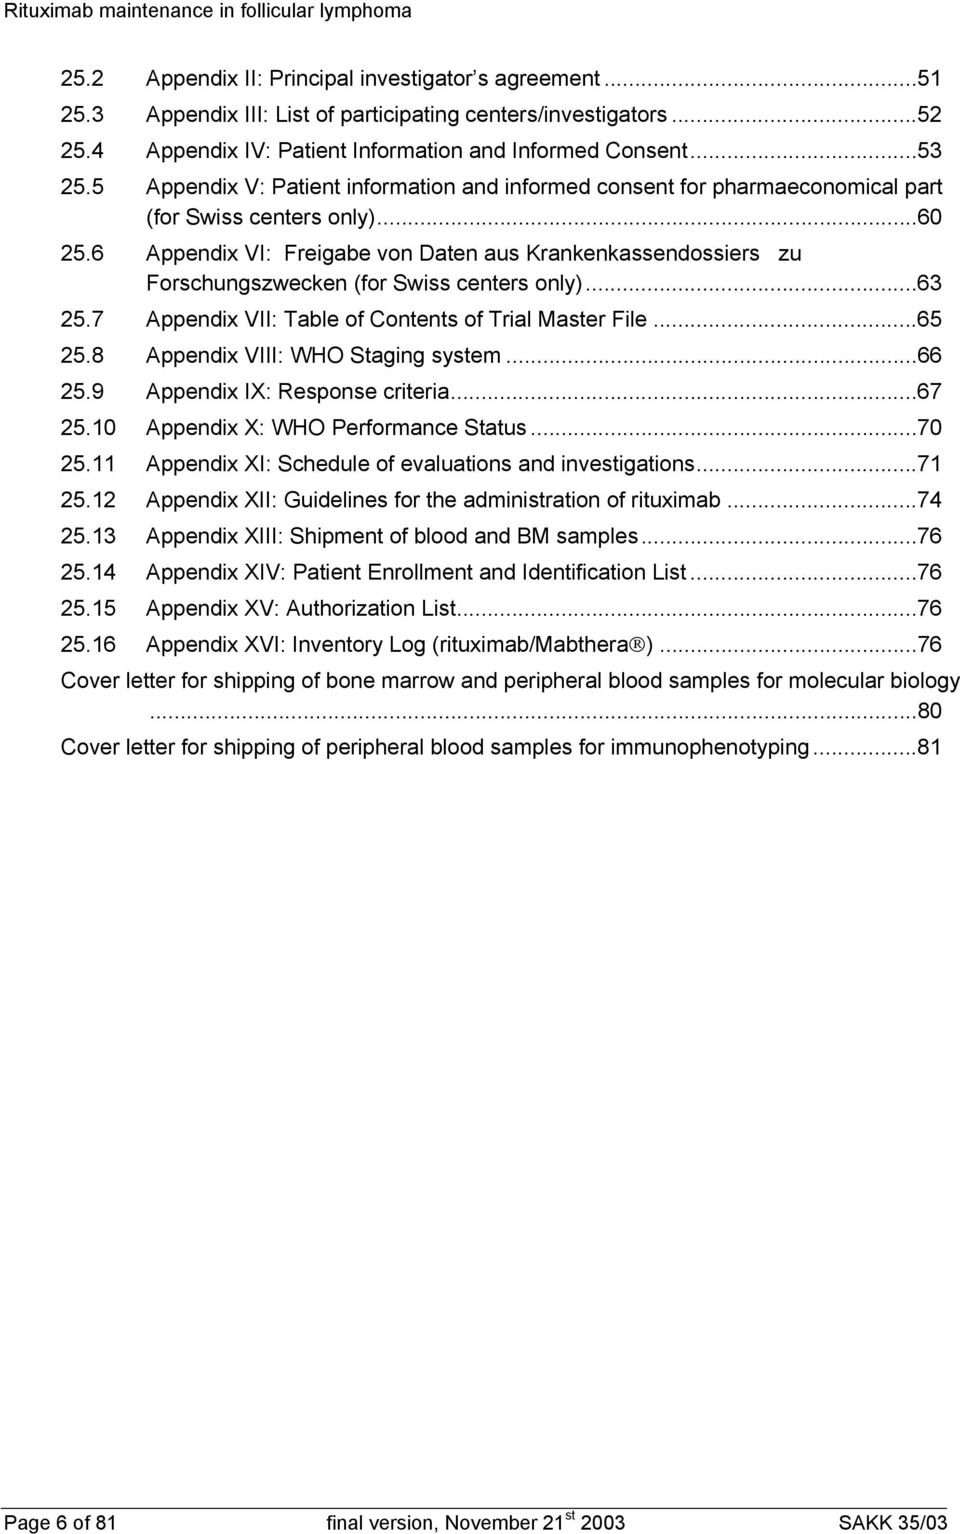 6 Appendix VI: Freigabe von Daten aus Krankenkassendossiers zu Forschungszwecken (for Swiss centers only)...63 25.7 Appendix VII: Table of Contents of Trial Master File...65 25.